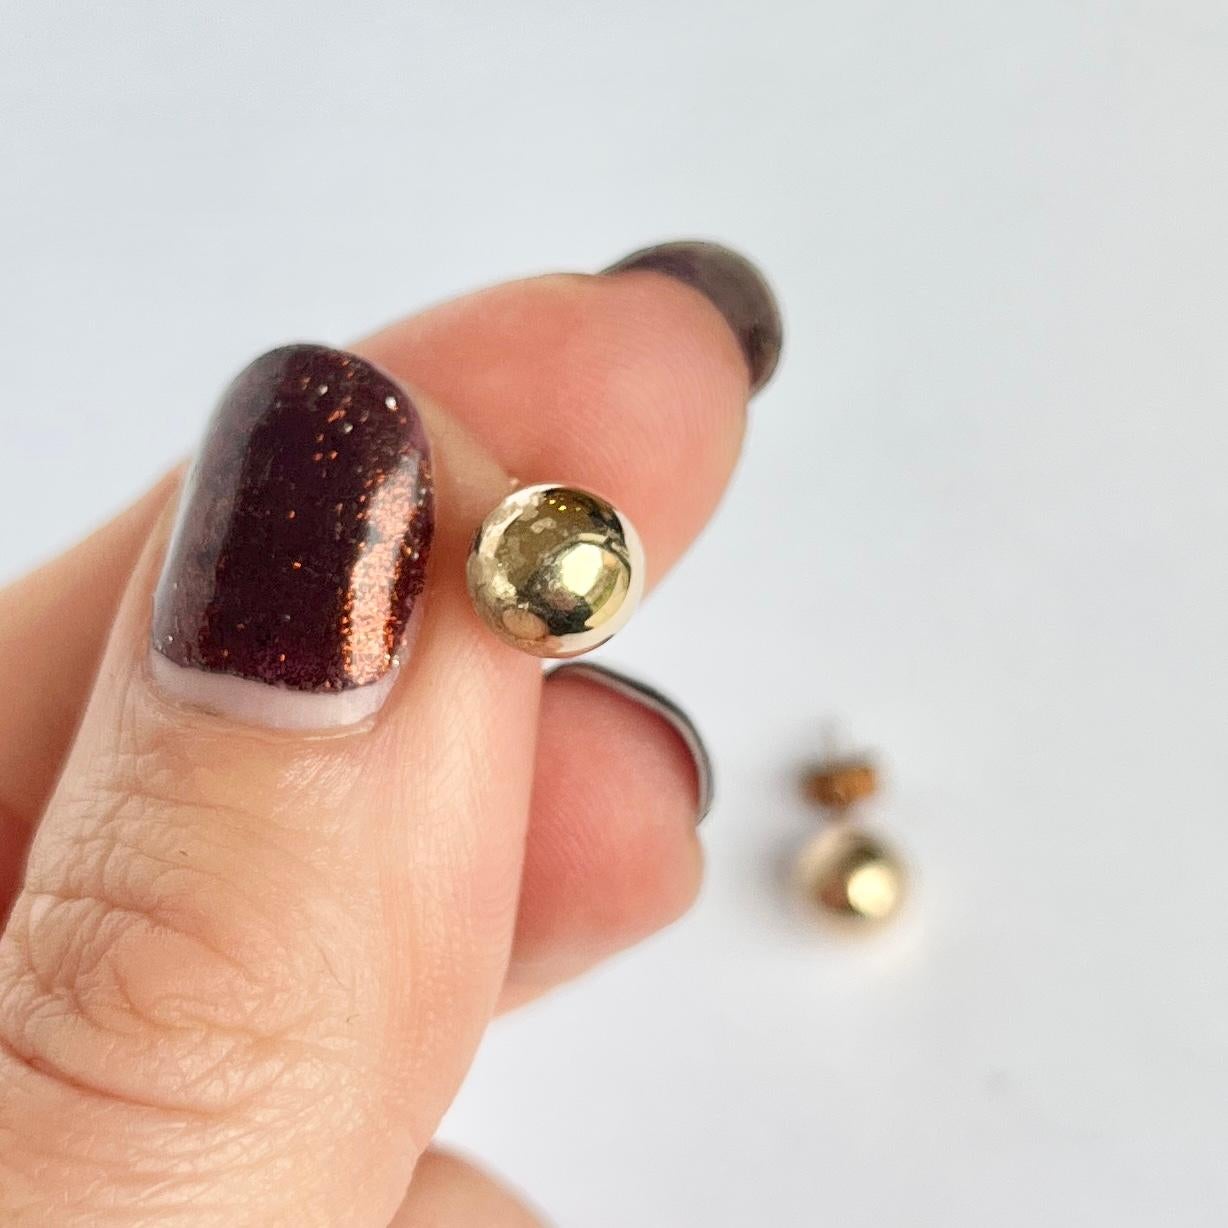 Glänzende Kugeln aus 9-karätigem Gold auf Ohrsteckerrücken. 

Kugeldurchmesser: 7mm

Gewicht: 0,54g